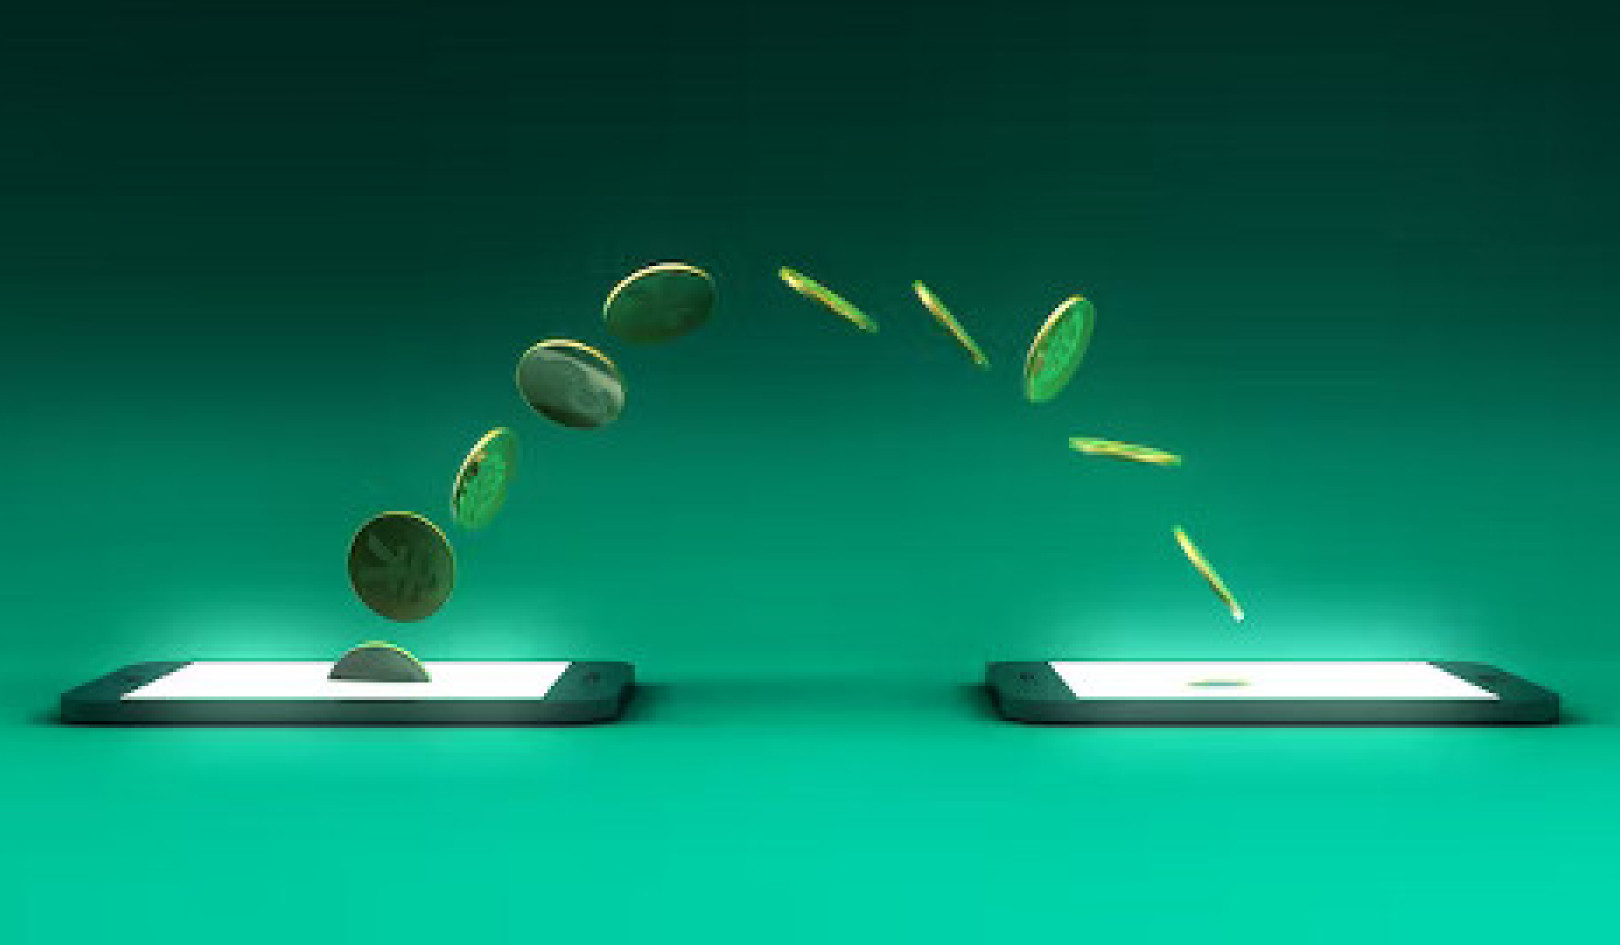 Πώς το ψηφιακό χρήμα έχει αλλάξει τον τρόπο που ζούμε